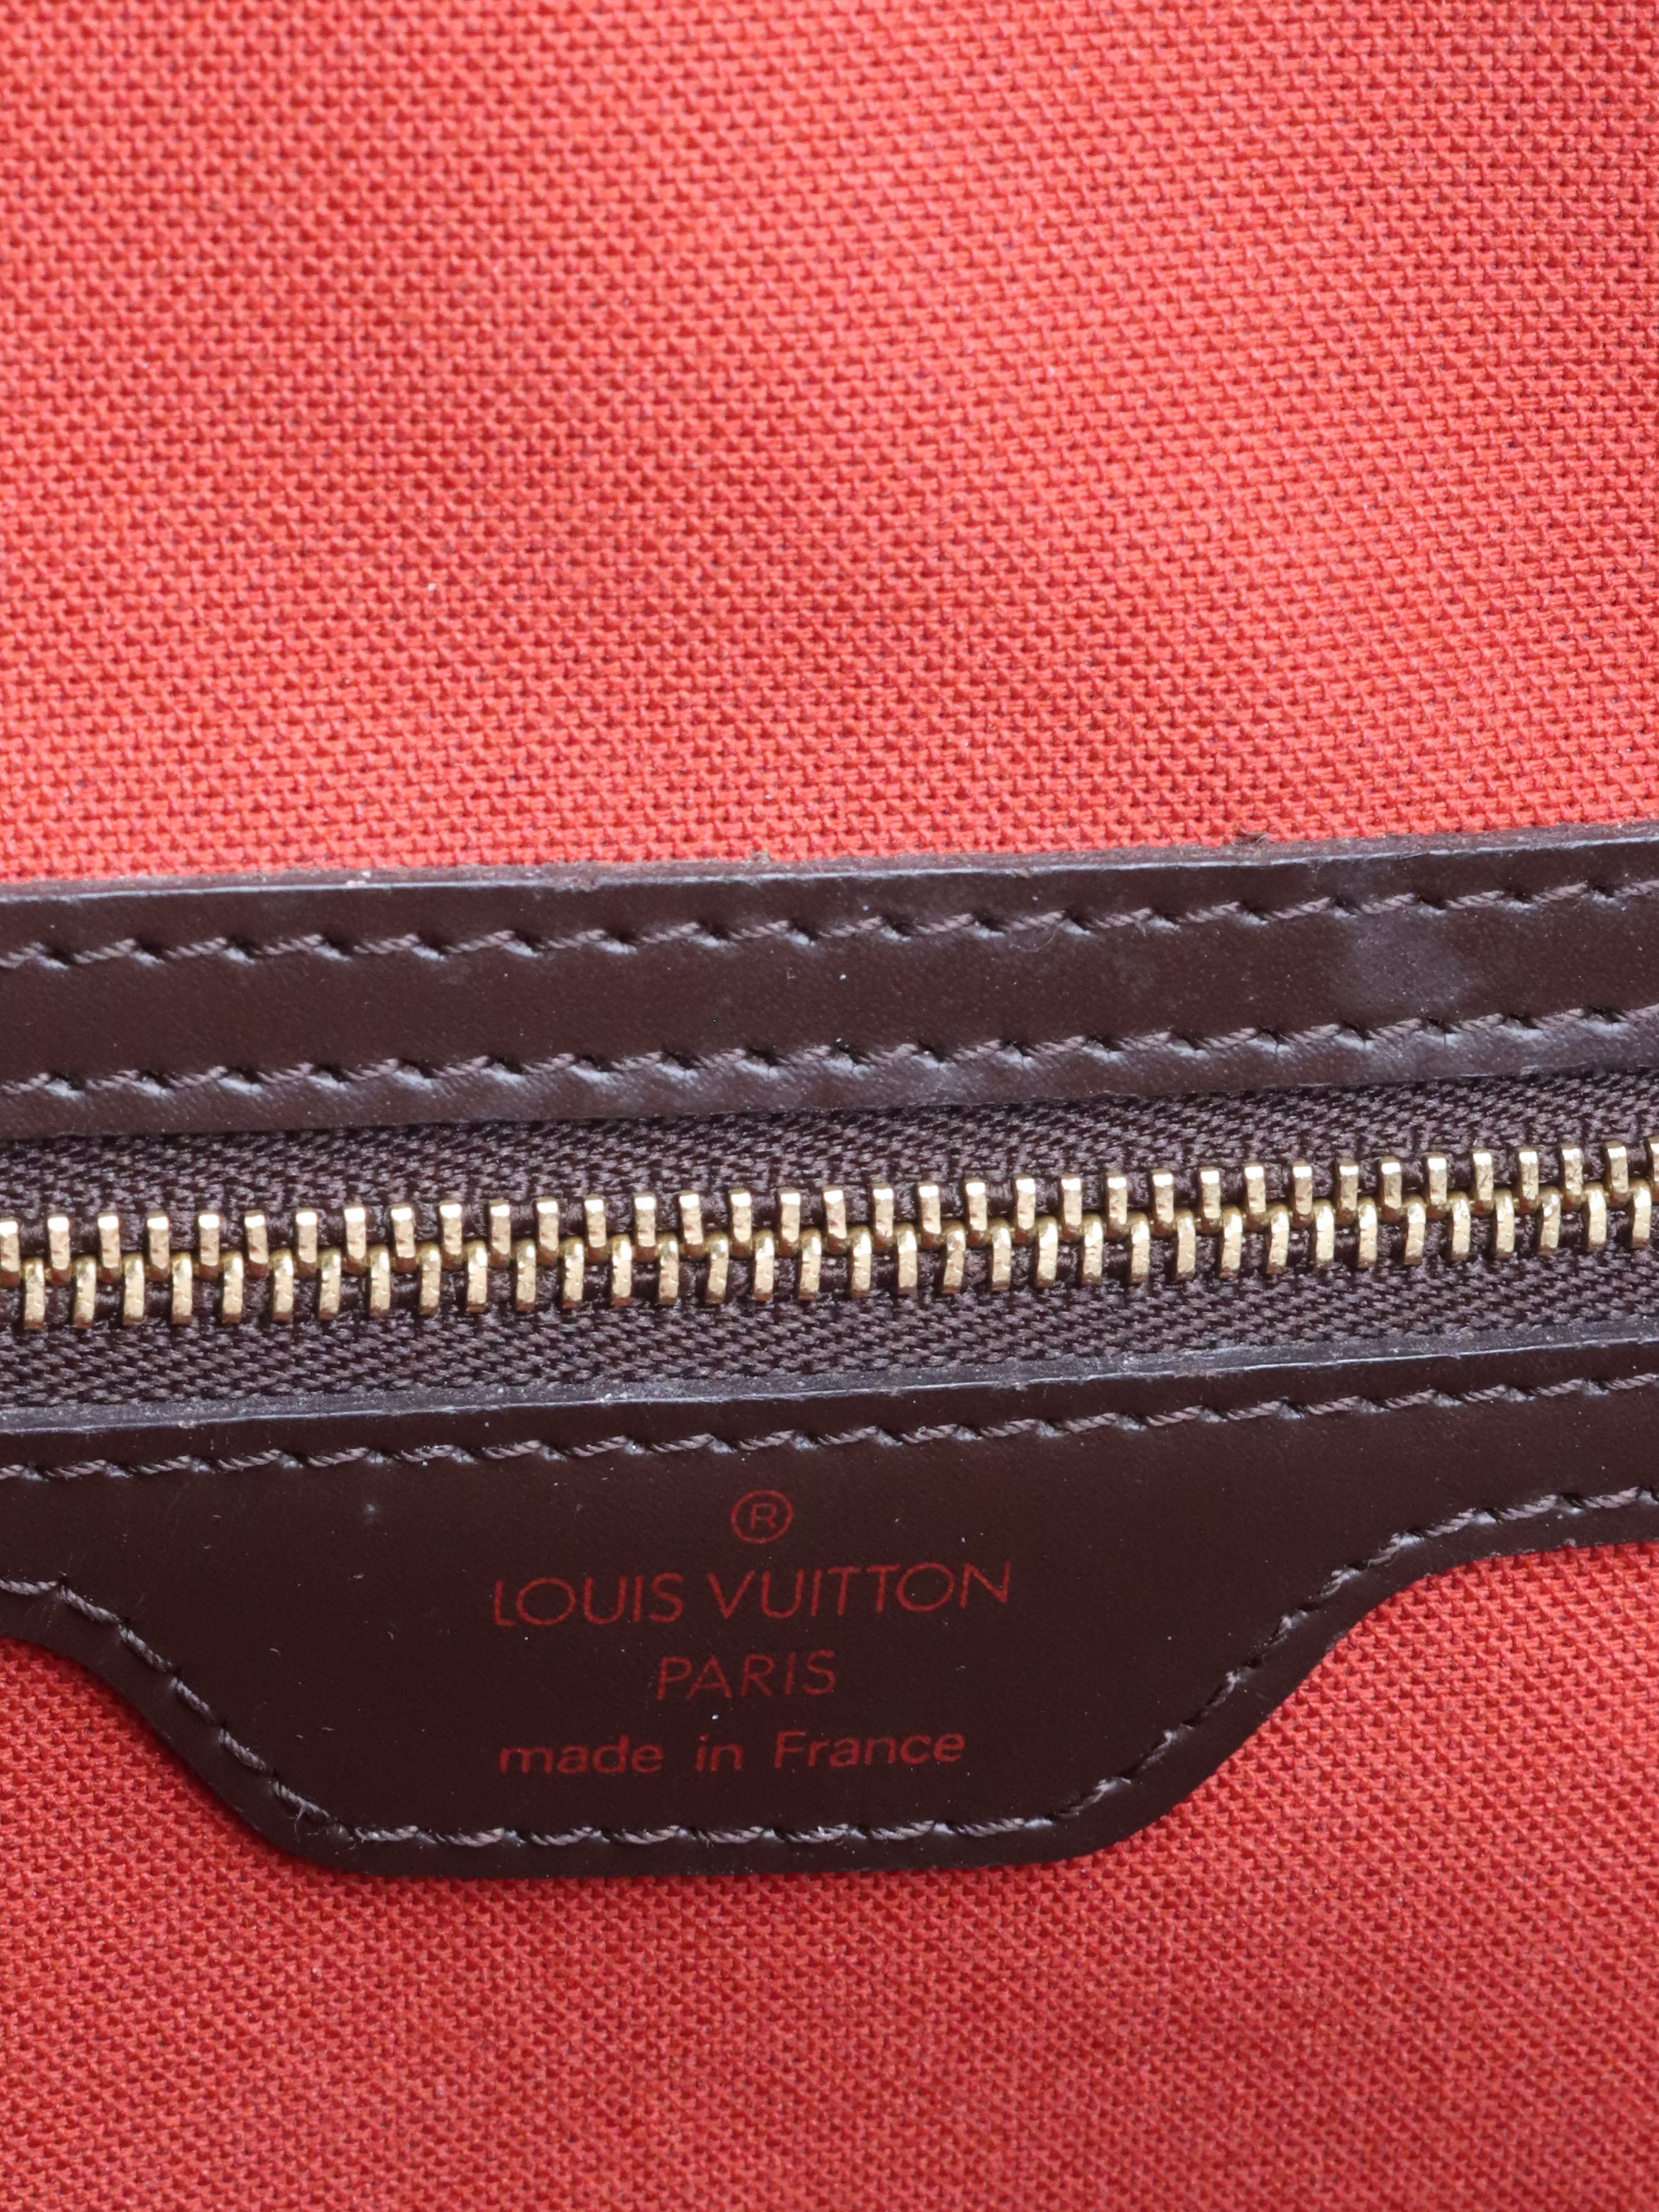 Louis Vuitton Damier Ebene Nolita Bag